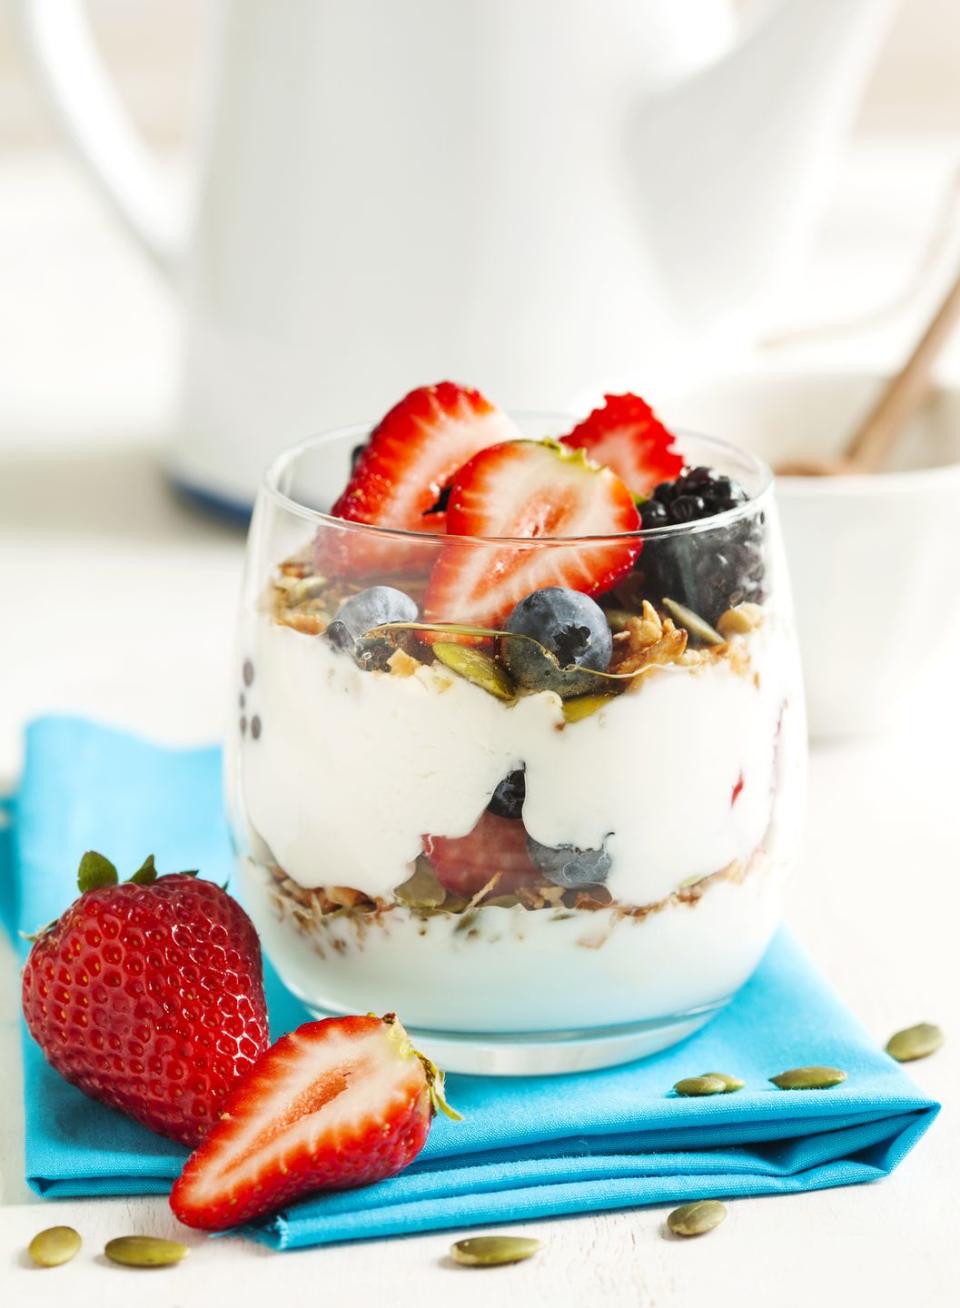 Try Plain Yogurt With Berries